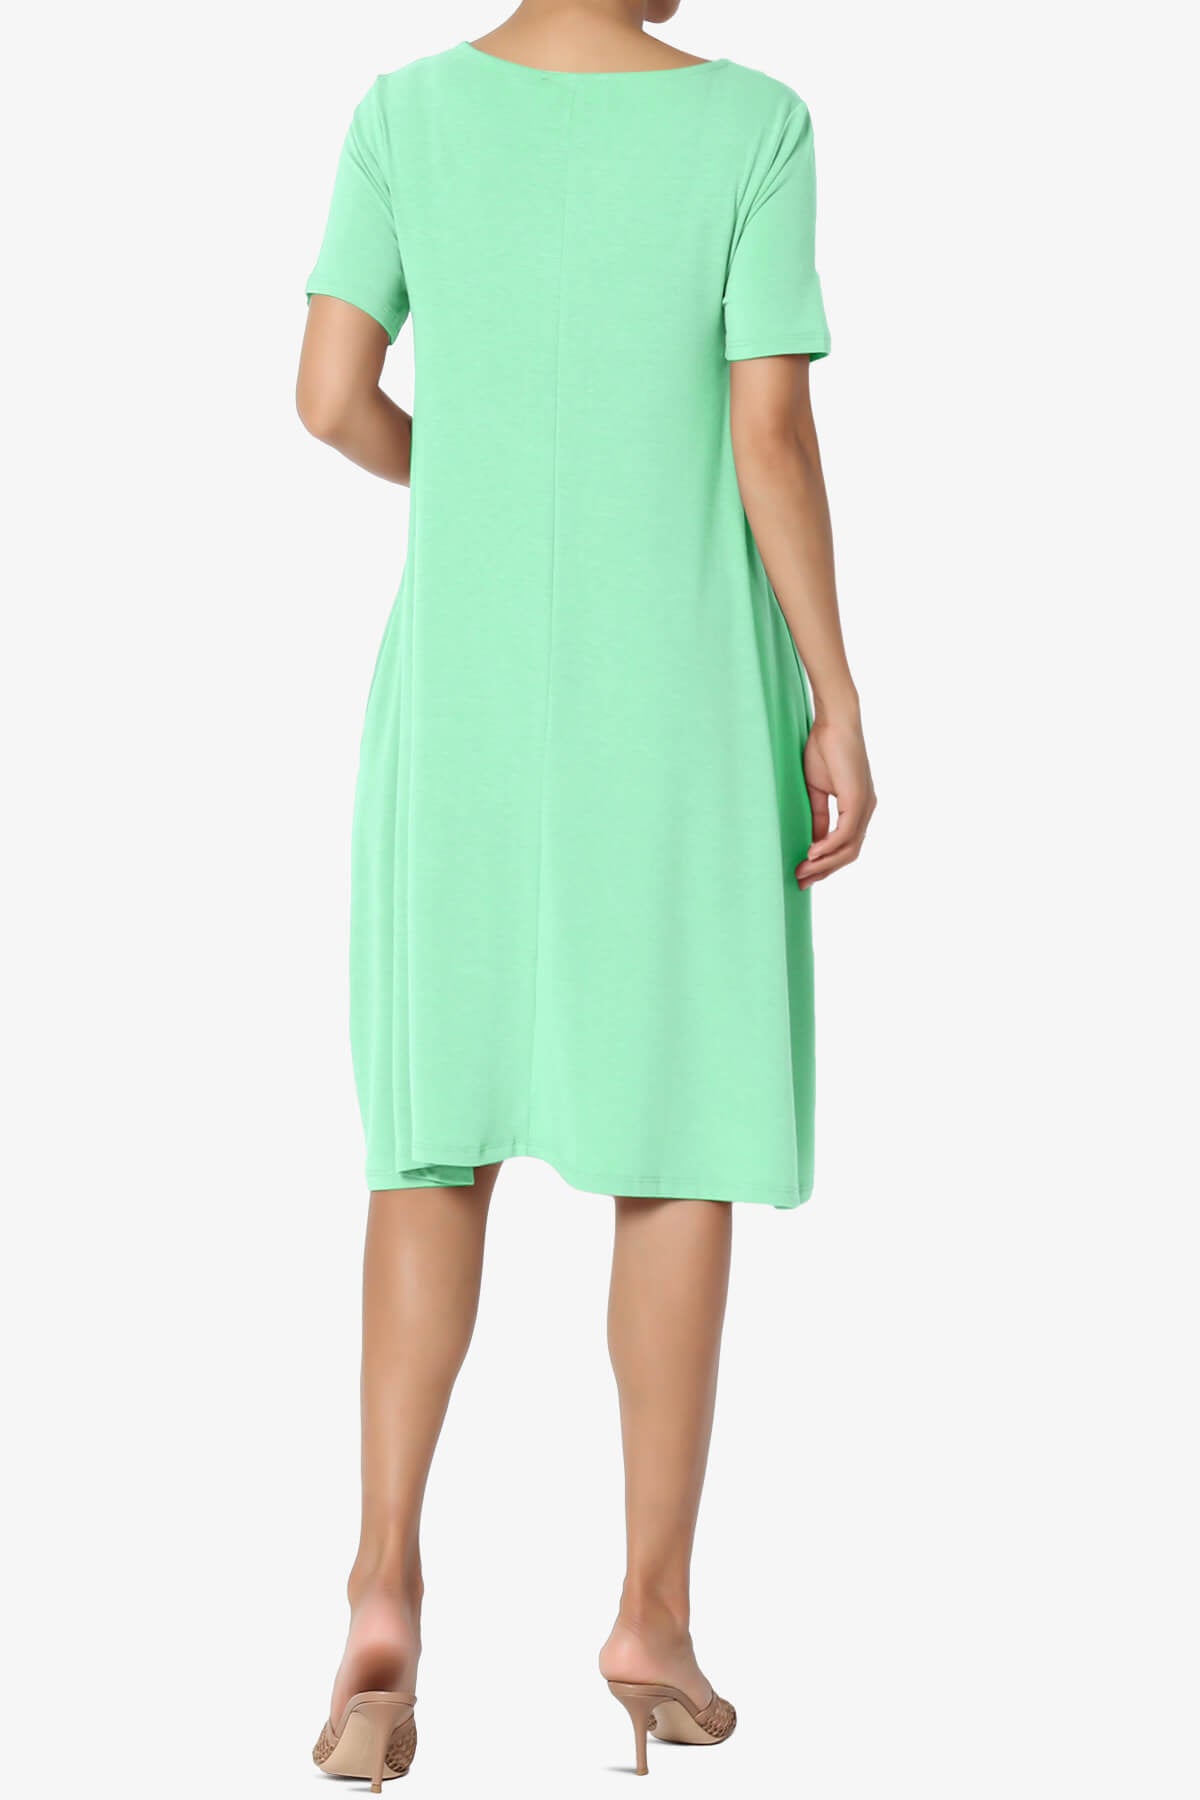 Allie Short Sleeve Jersey A-Line Dress GREEN MINT_2